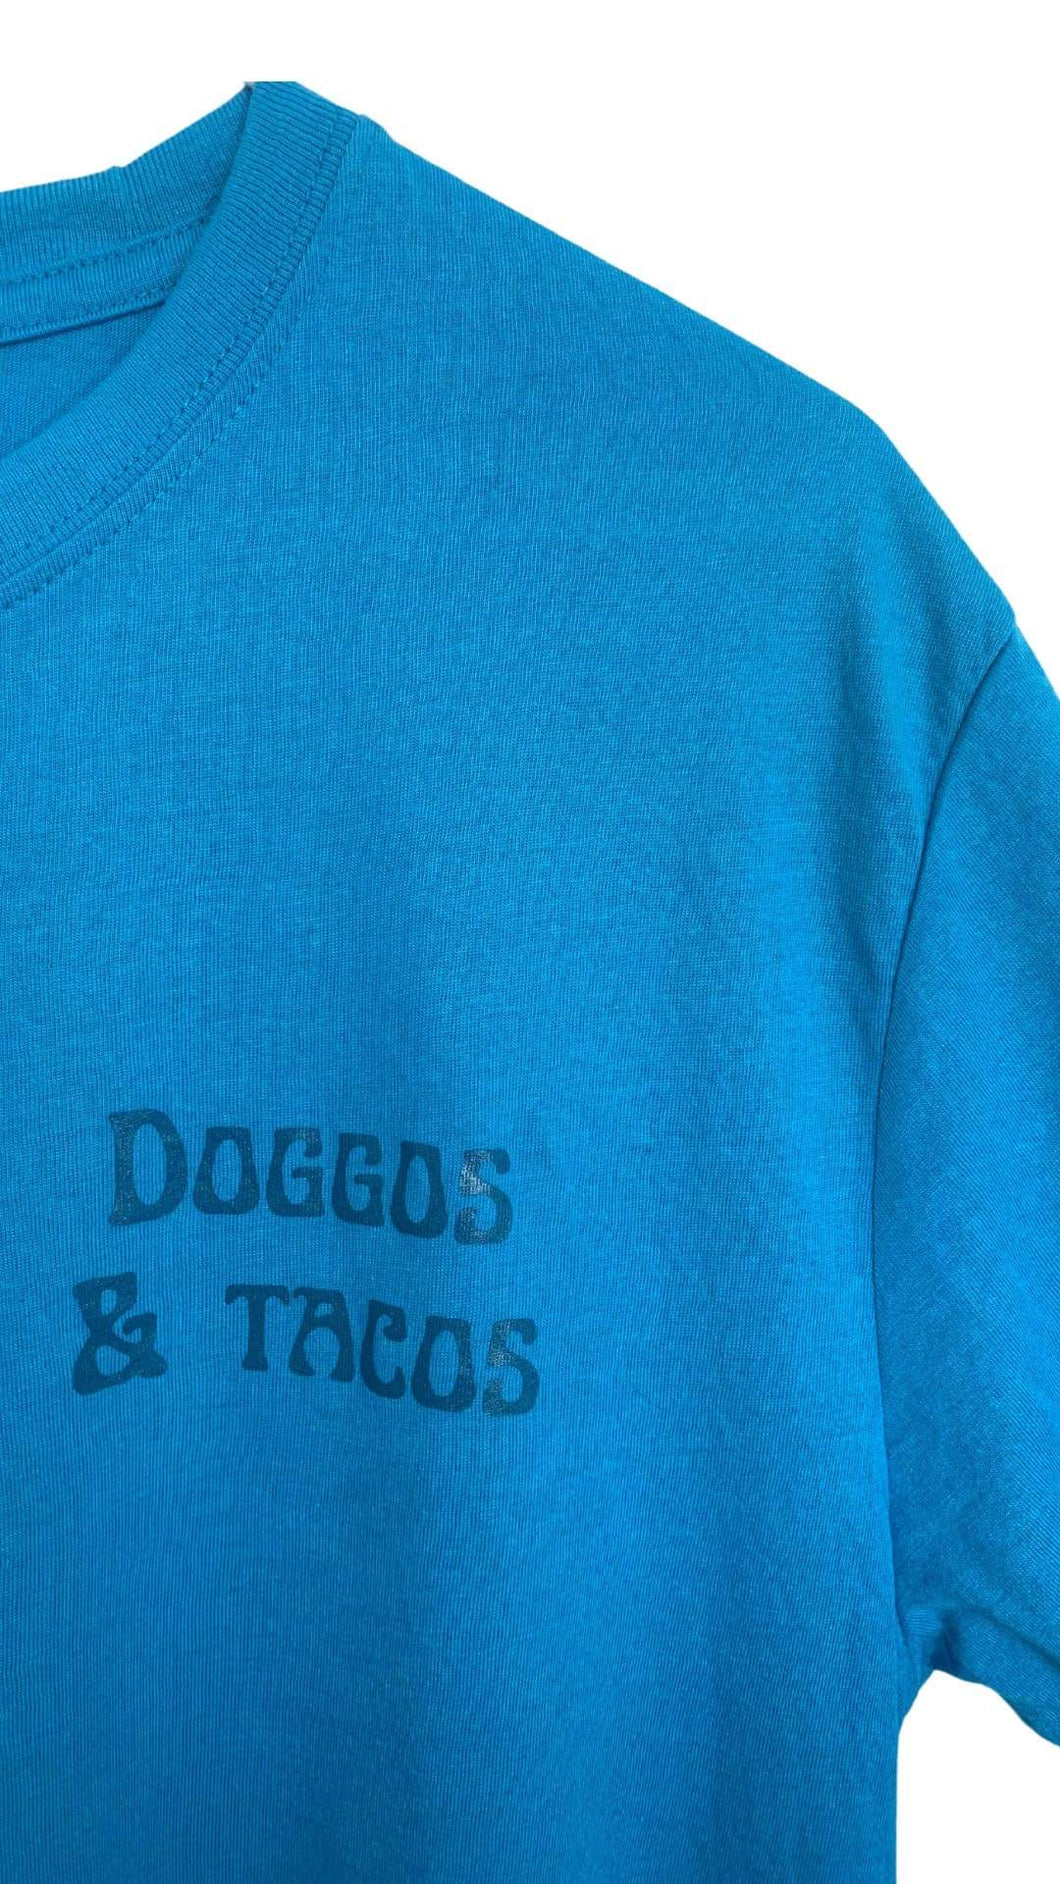 T-Shirt: doggos & tacos